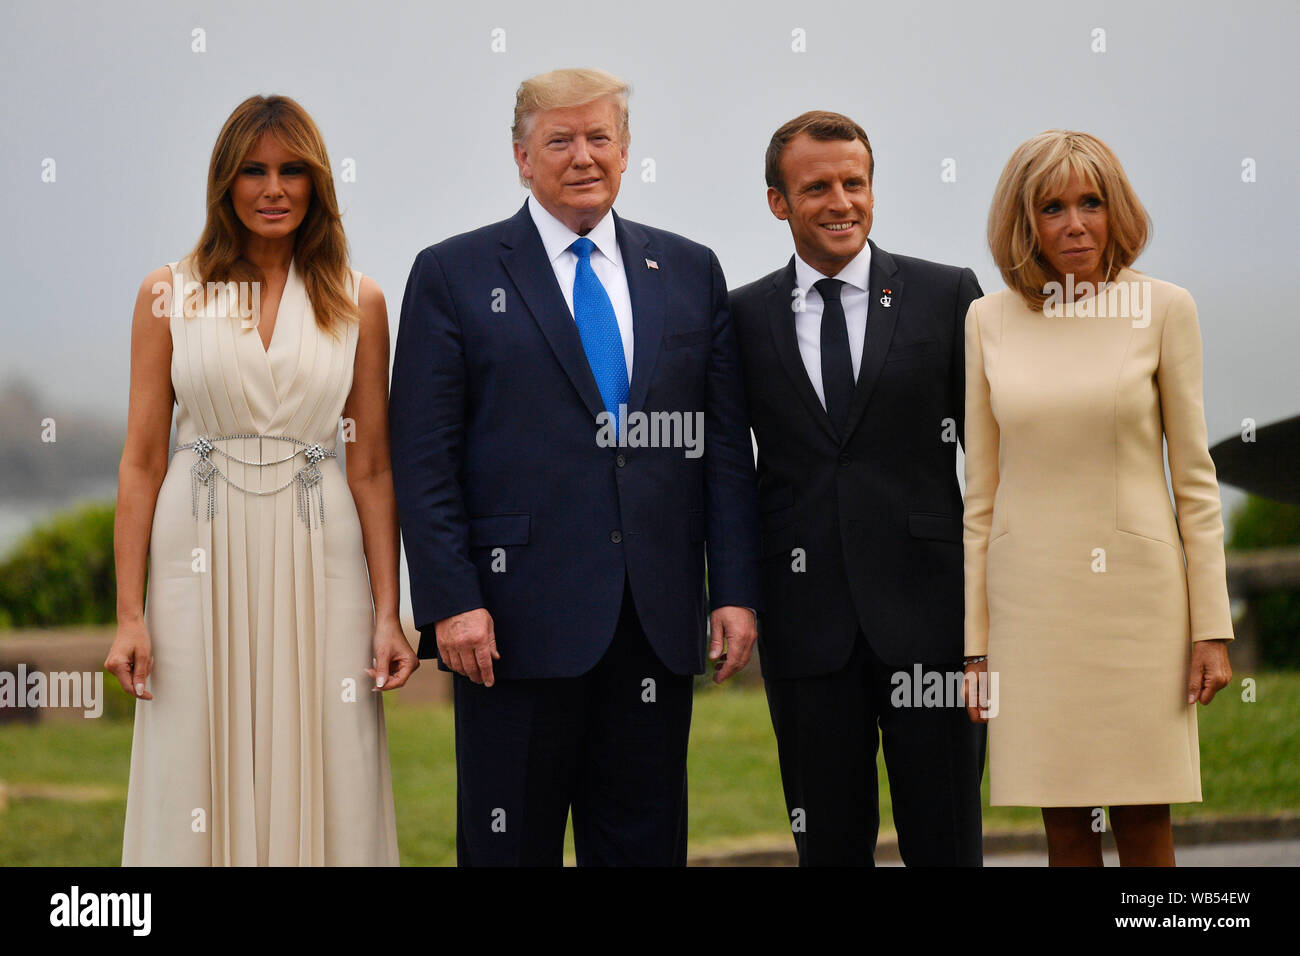 Le président français, Emmanuel Macron et sa femme Brigitte Trogneux (les deux à droite) nous rencontrer le Président Donald Trump et son épouse Melania, à l'accueil officiel durant le sommet du G7 à Biarritz, France. Banque D'Images